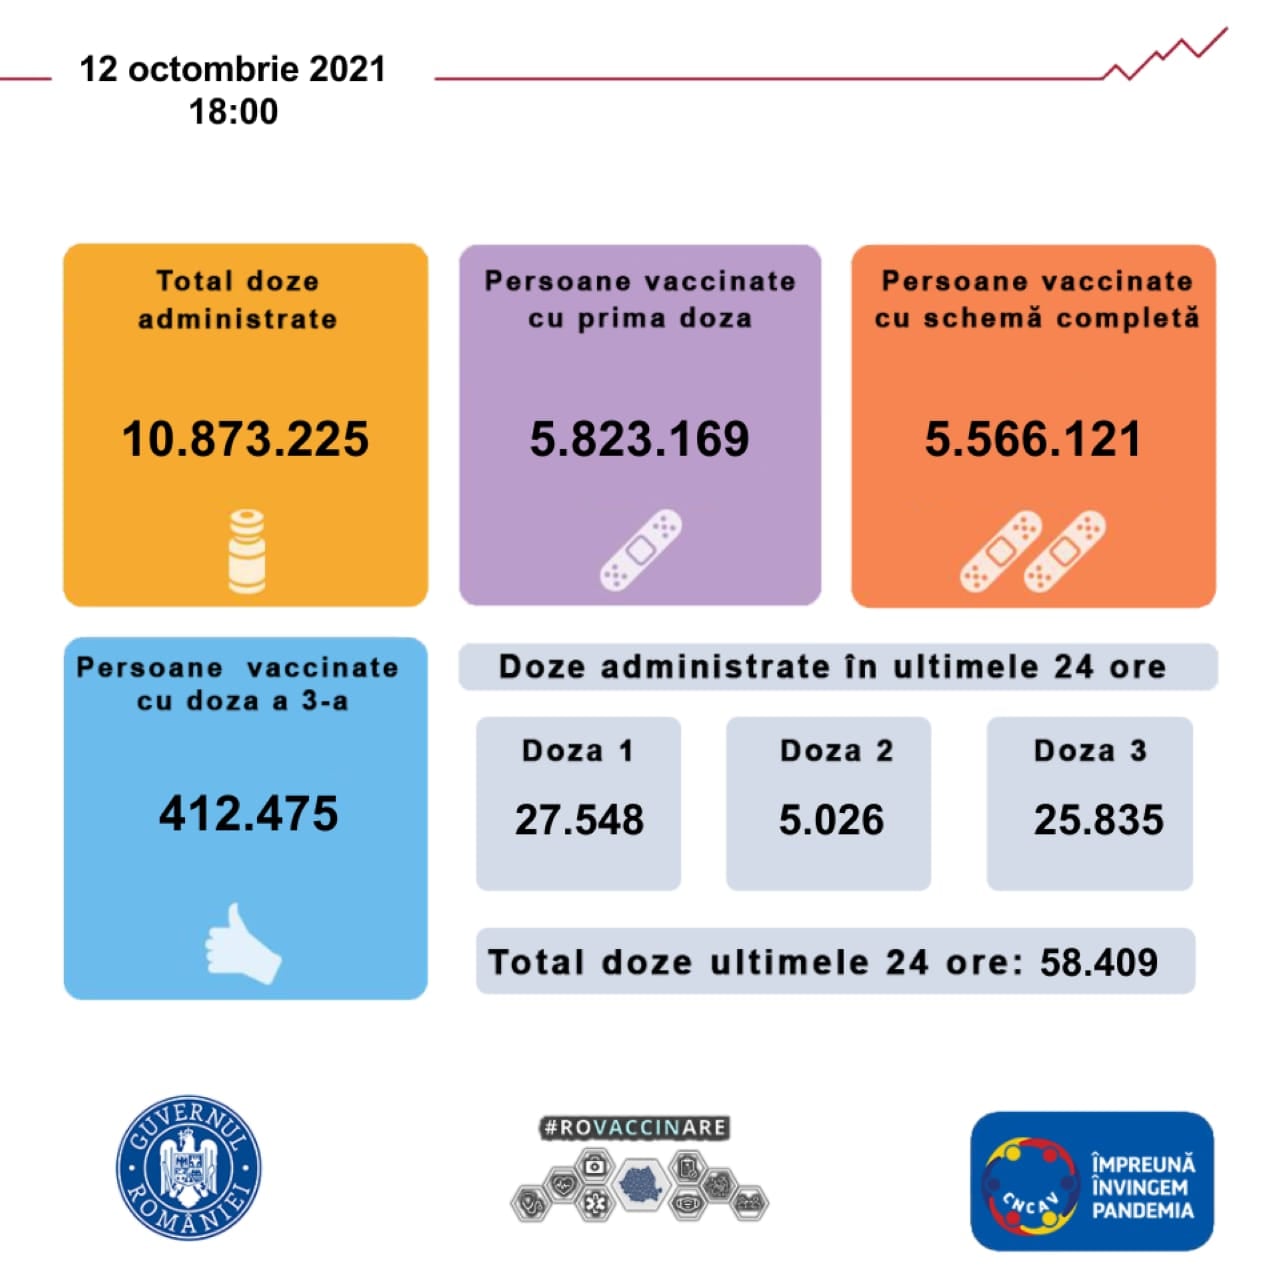 Governo della Romania Finora sono stati vaccinati 5.8 milioni di rumeni nel paese